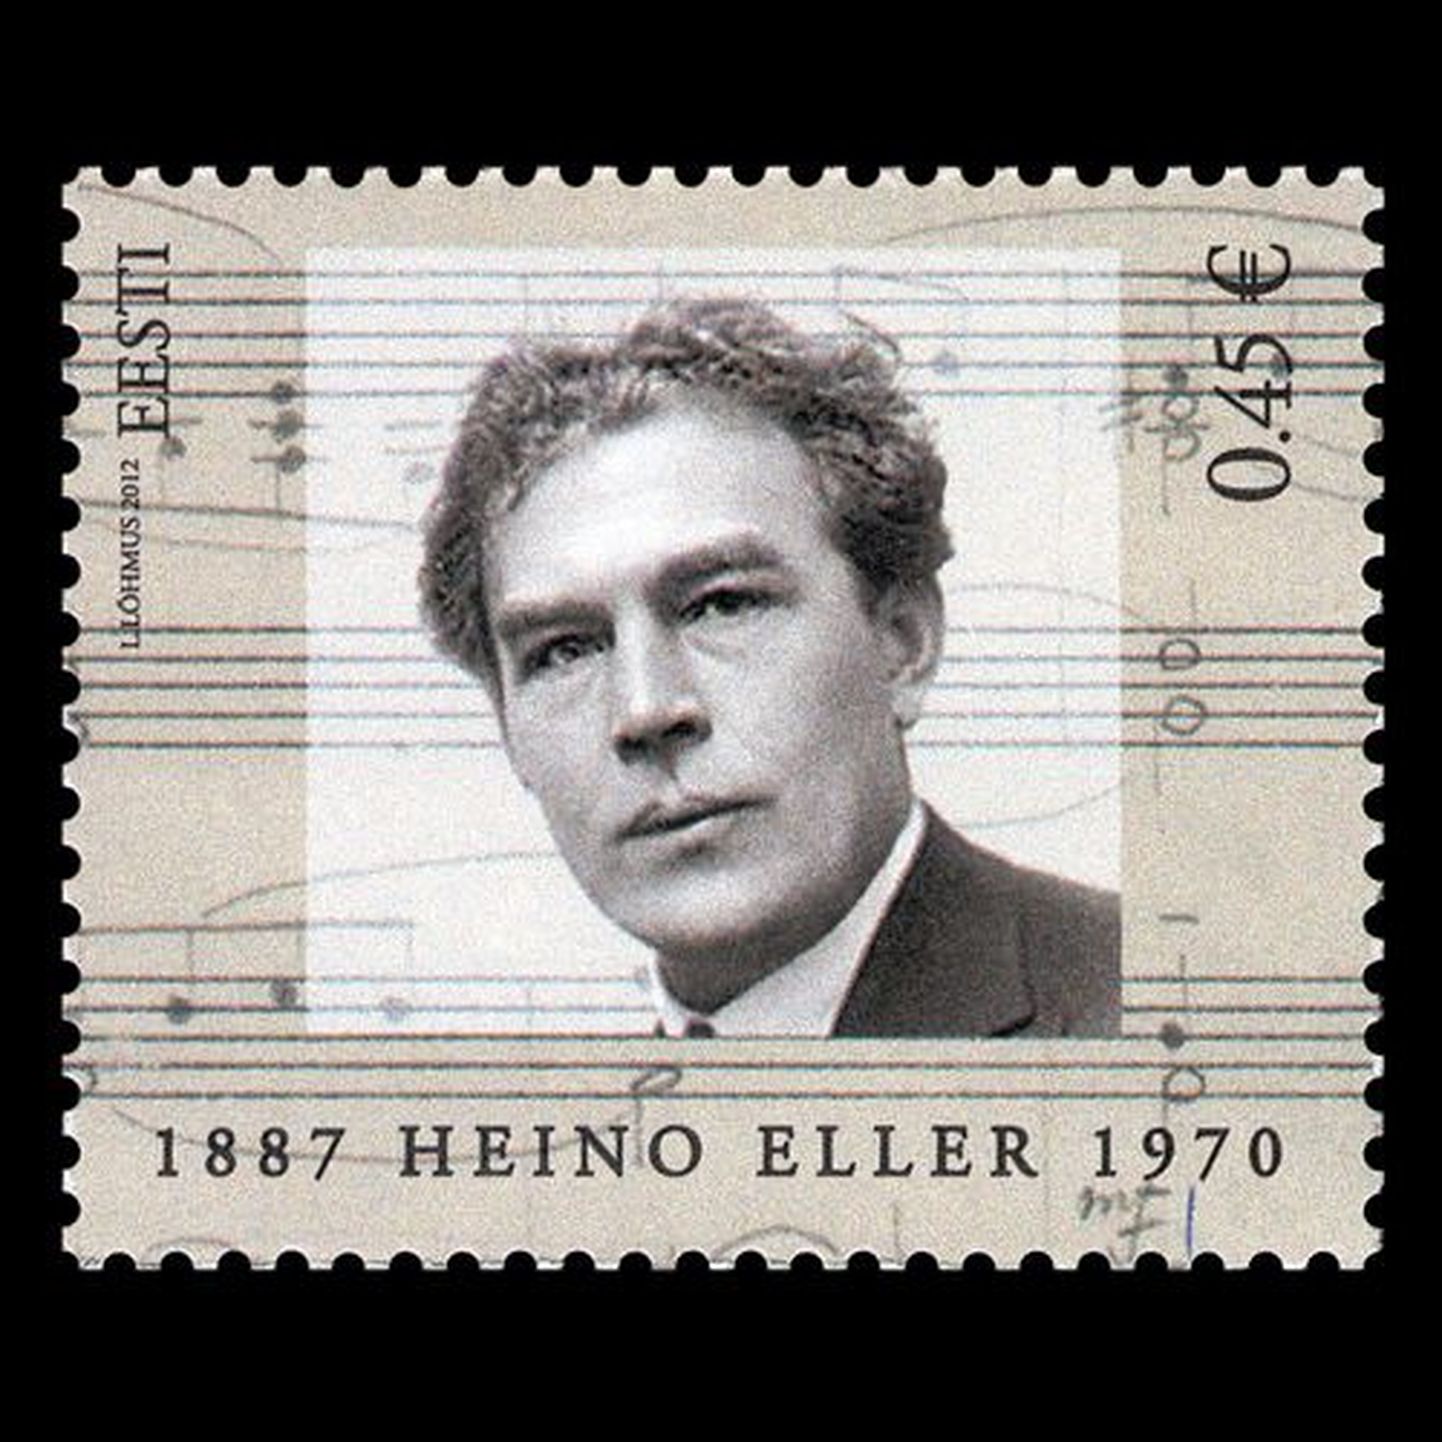 Heino Elleri postmark.